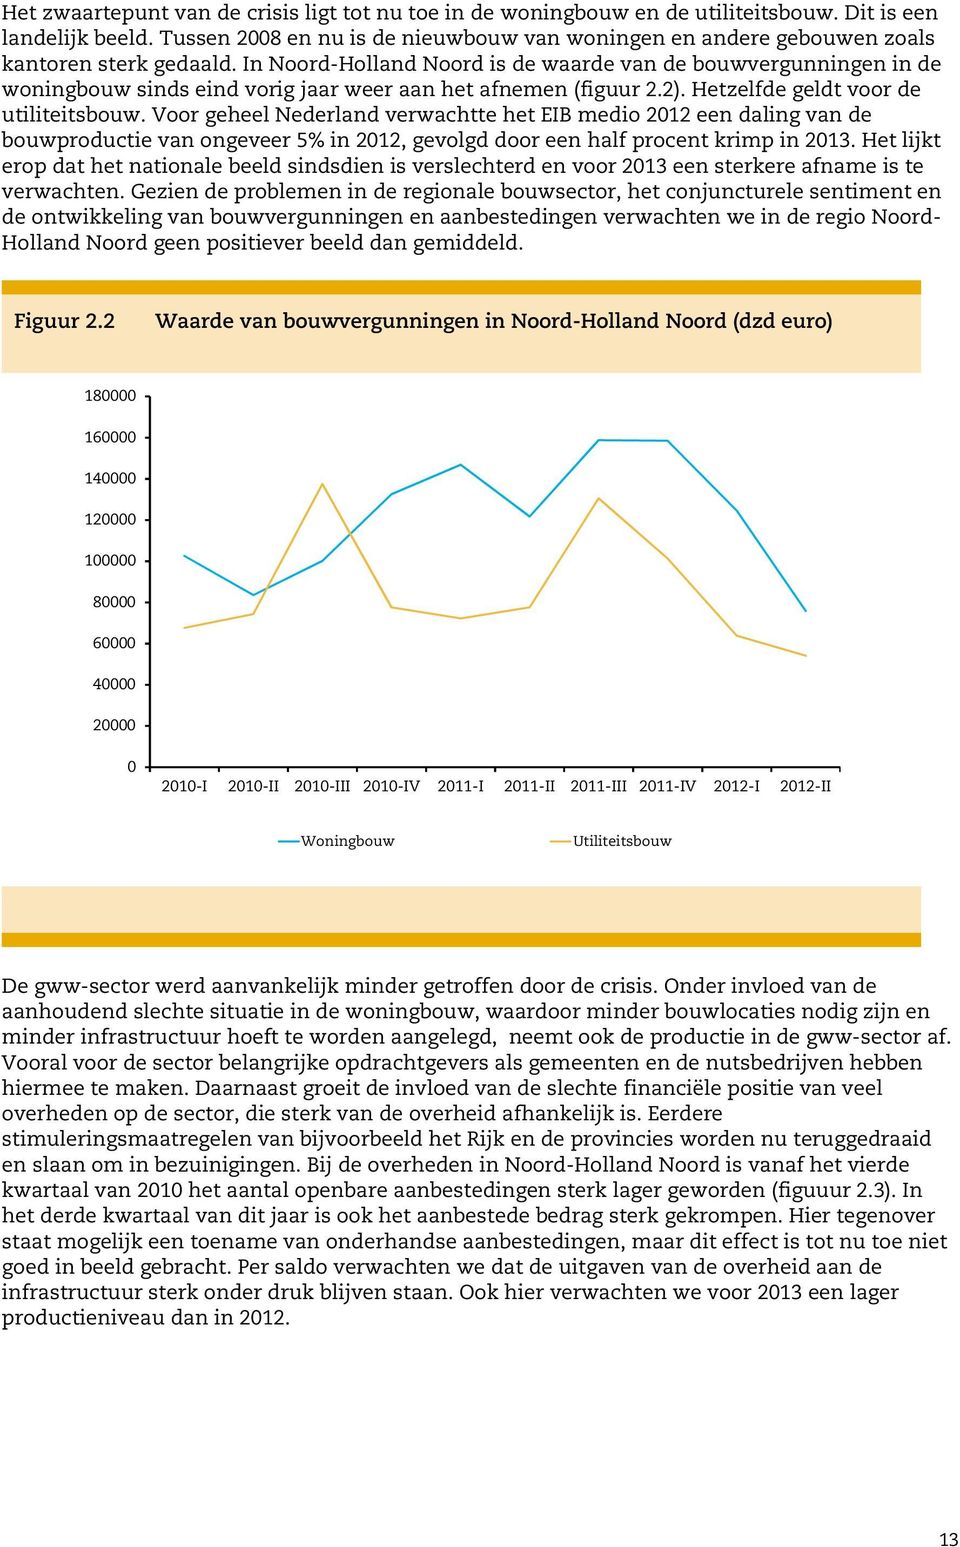 In Noord-Holland Noord is de waarde van de bouwvergunningen in de woningbouw sinds eind vorig jaar weer aan het afnemen (figuur 2.2). Hetzelfde geldt voor de utiliteitsbouw.